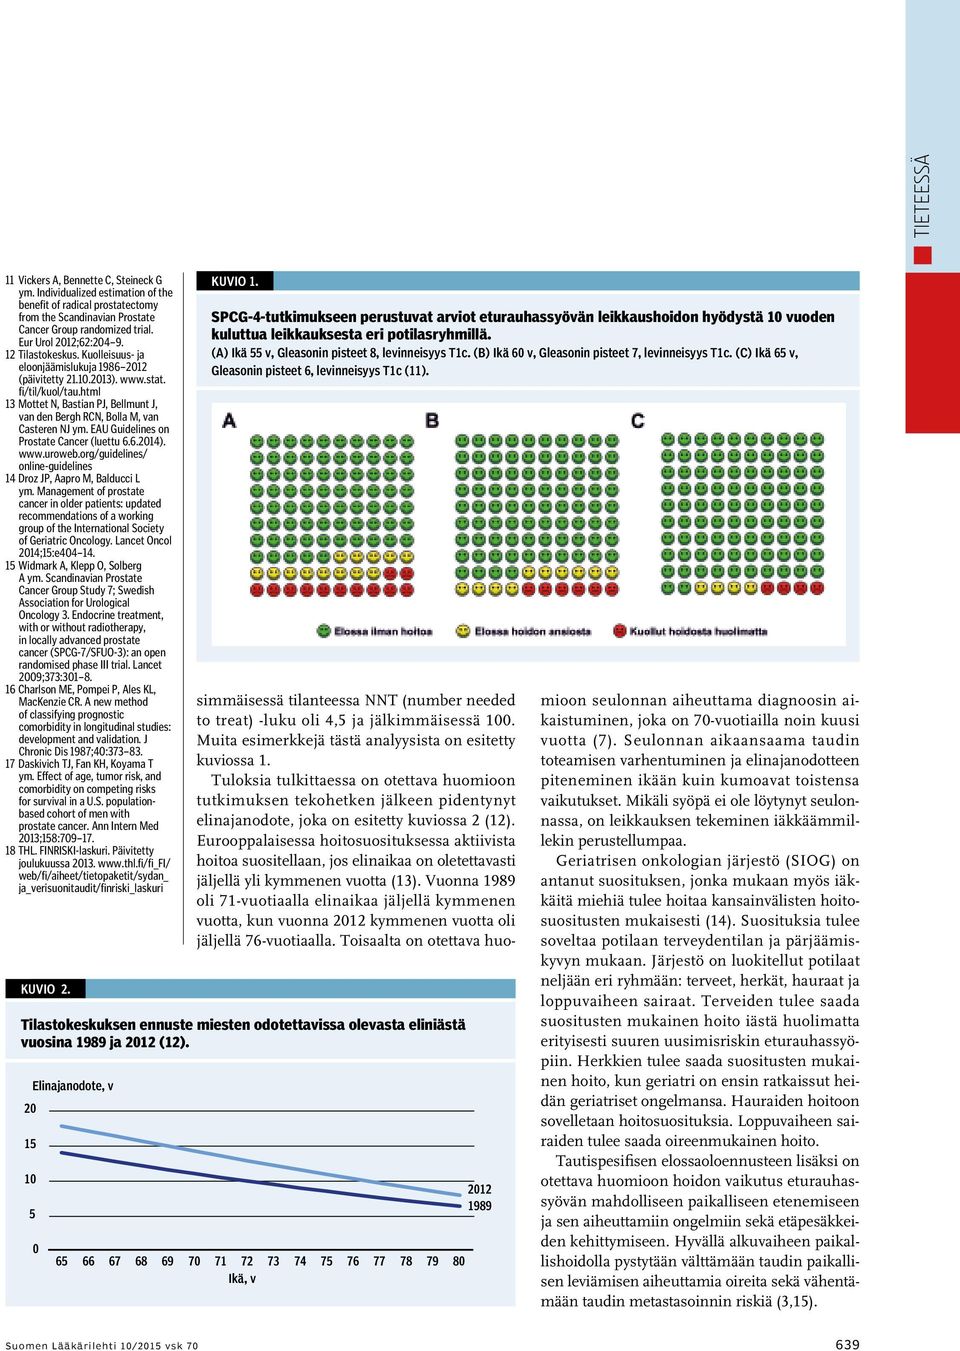 html 13 Mottet N, Bastian PJ, Bellmunt J, van den Bergh RCN, Bolla M, van Casteren NJ ym. EAU Guidelines on Prostate Cancer (luettu 6.6.2014). www.uroweb.